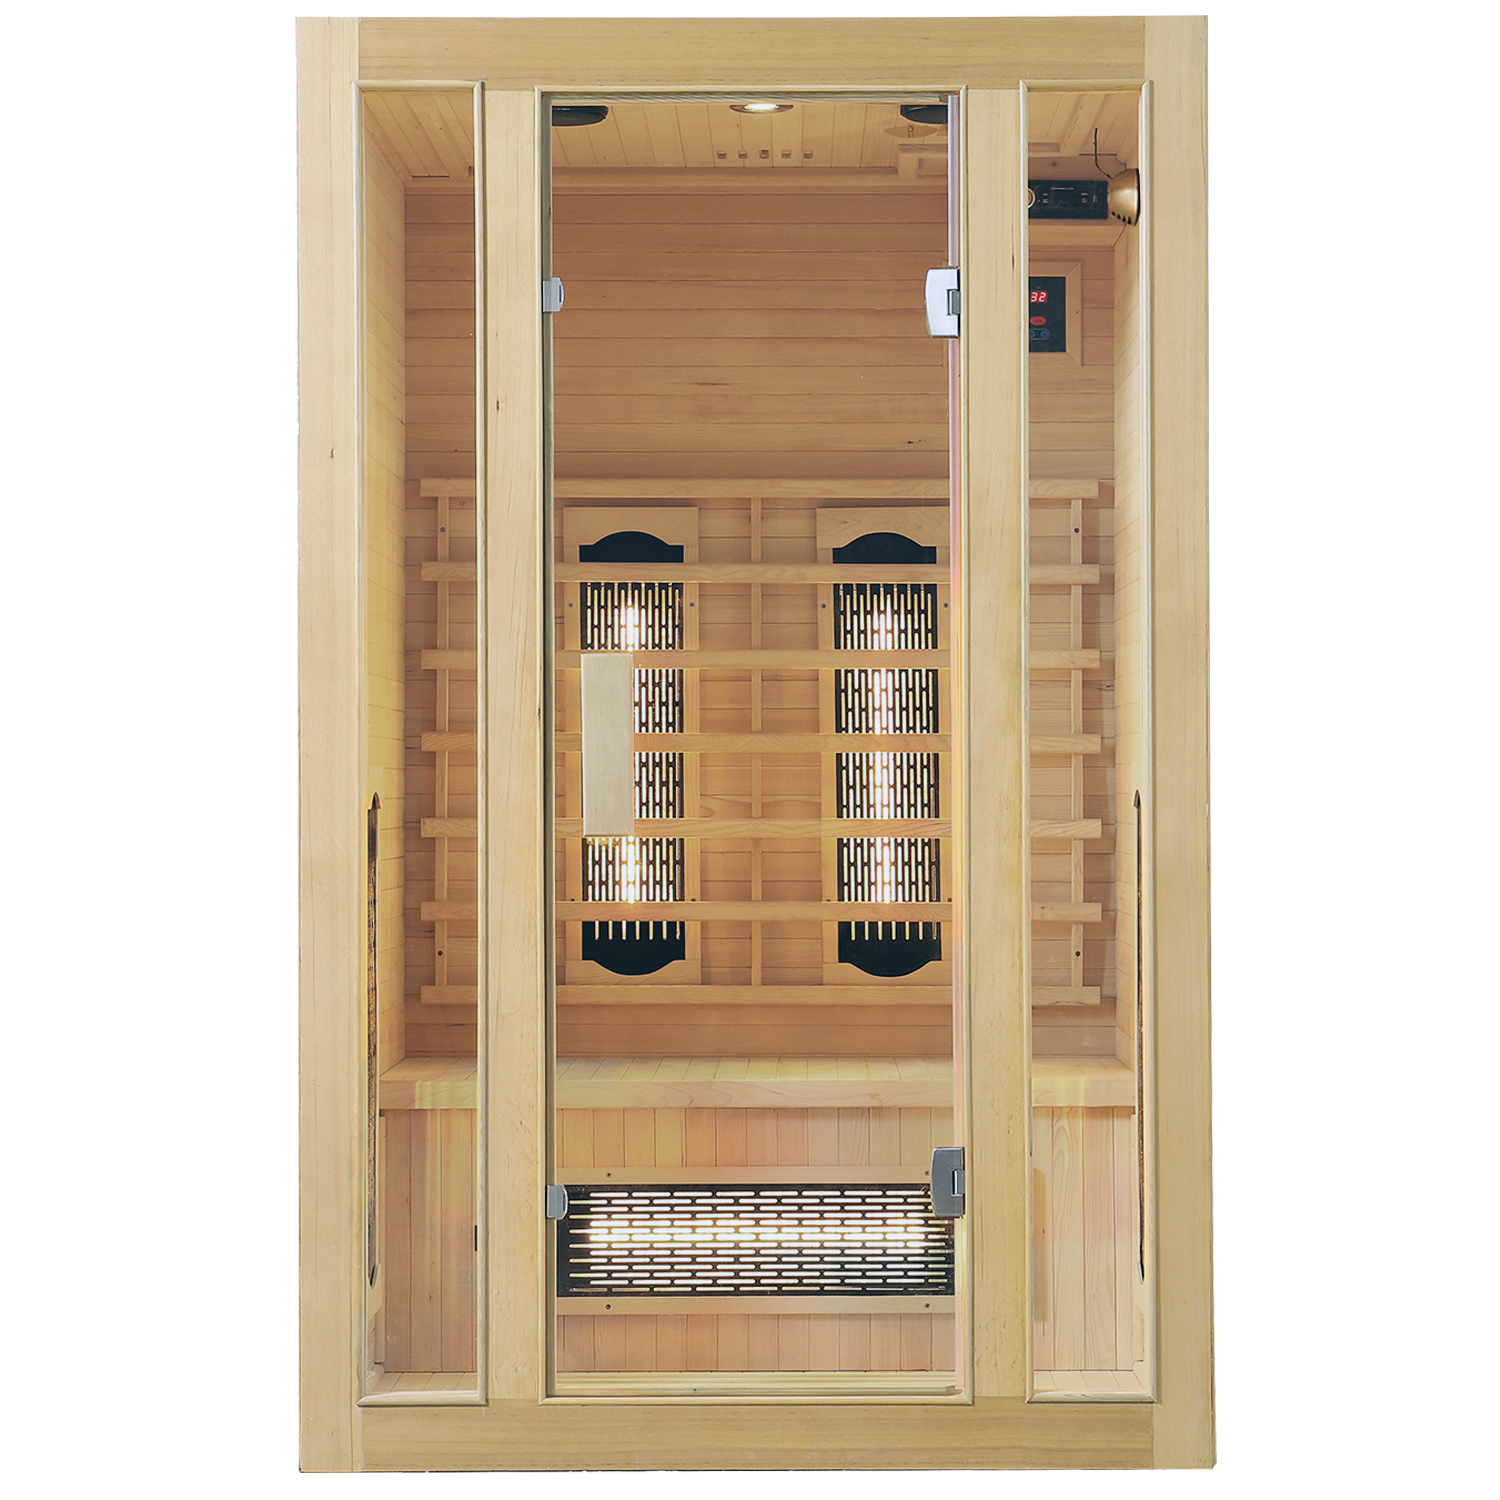 Juskys Infračervená sauna/tepelná kabina Nyborg S120V s plným spektrem, panelovým radiátorem a dřevem Hemlock